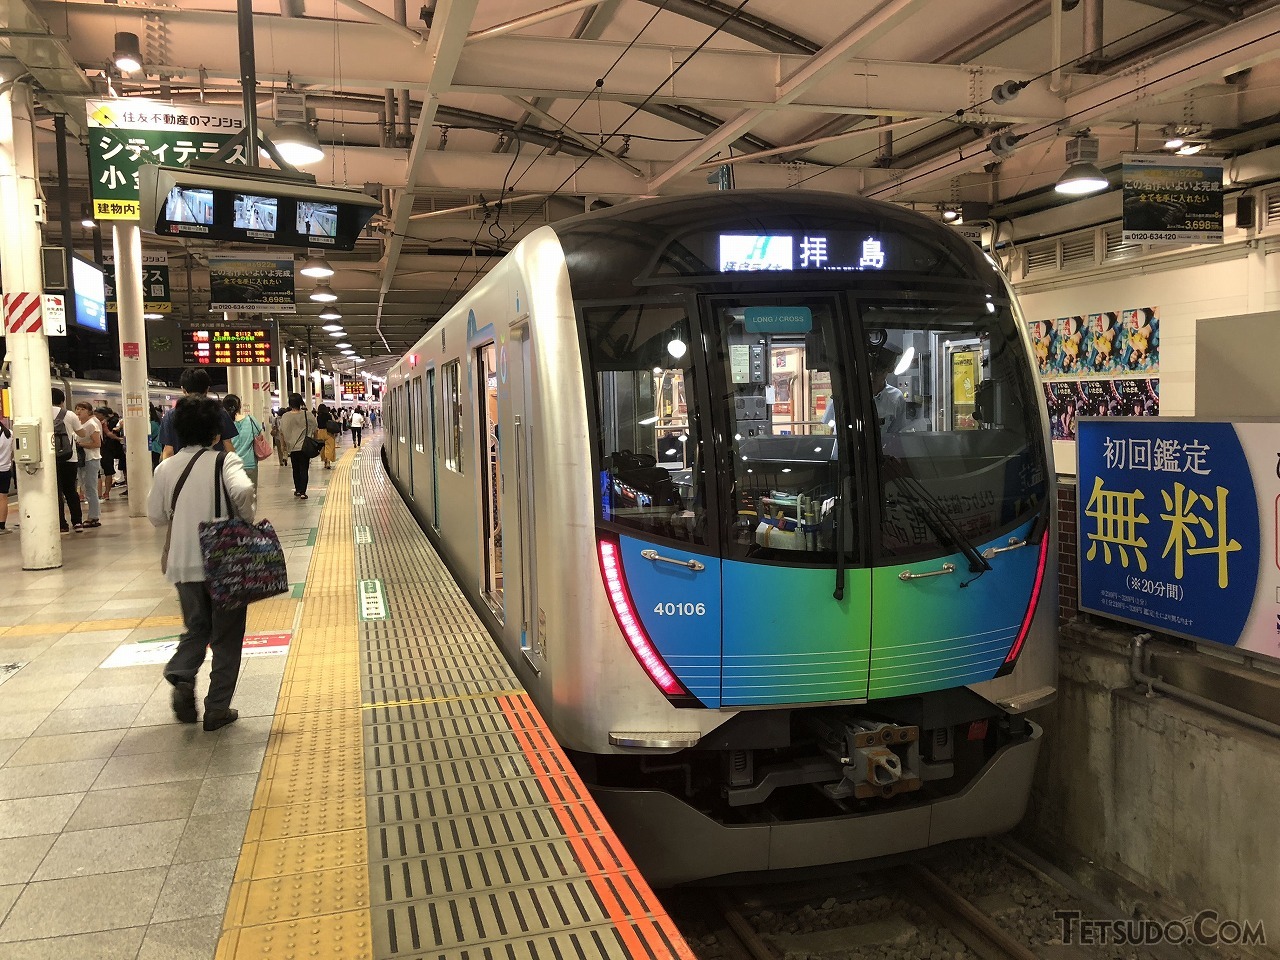 西武新宿〜拝島間を結ぶ「拝島ライナー」。現在は新型コロナウイルス対策のため空いていますが、普段は利用率が高い人気列車です